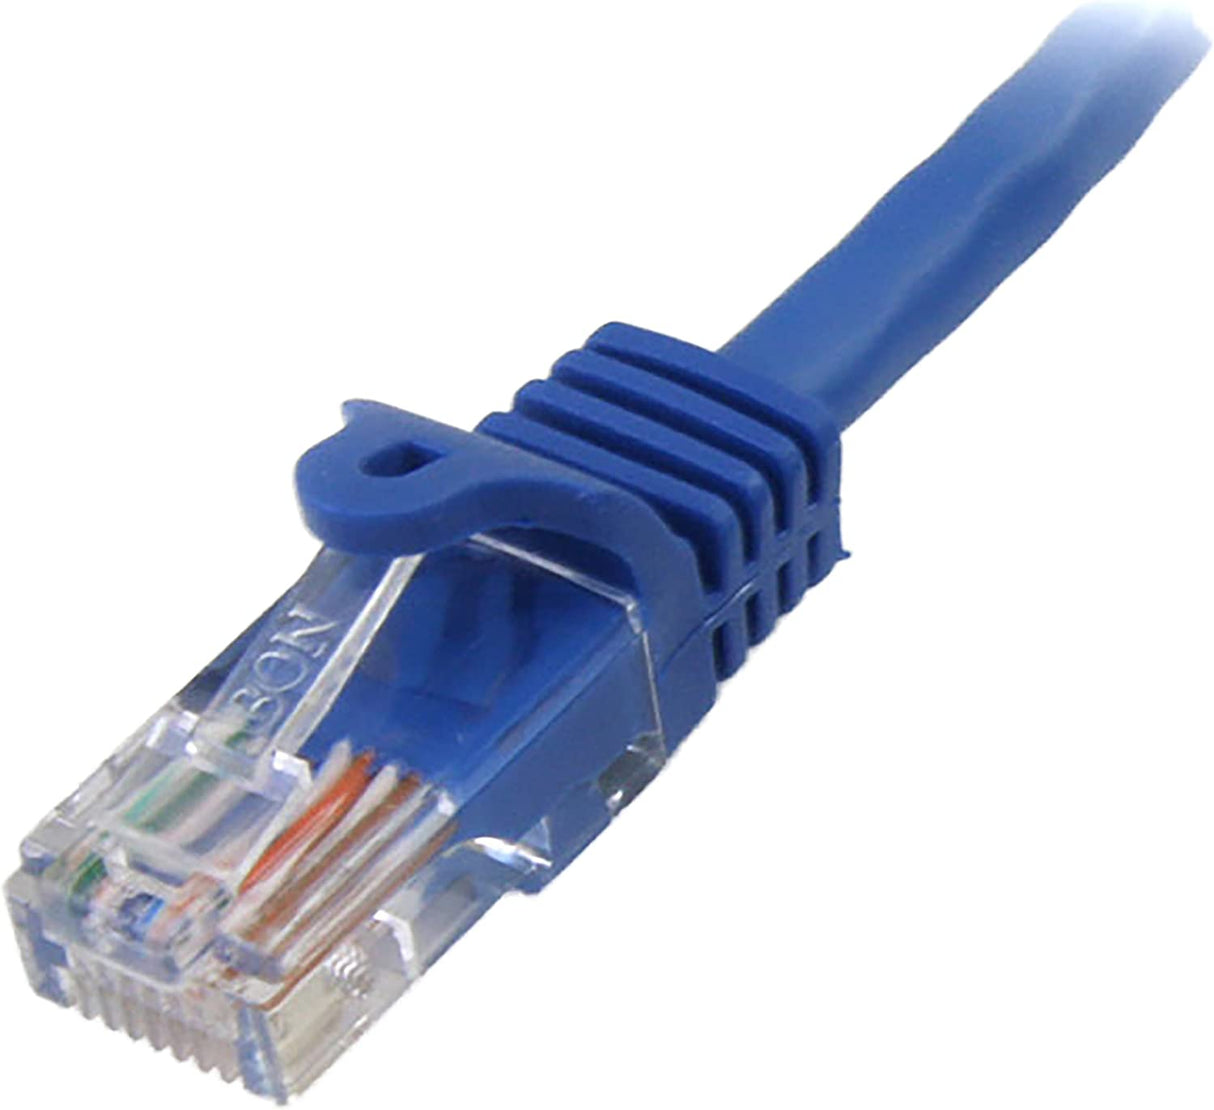 StarTech.com Cat5e Ethernet Cable15 ft - Blue - Patch Cable - Snagless Cat5e Cable - Network Cable - Ethernet Cord - Cat 5e Cable - 15ft 15 ft / 4.5m Blue